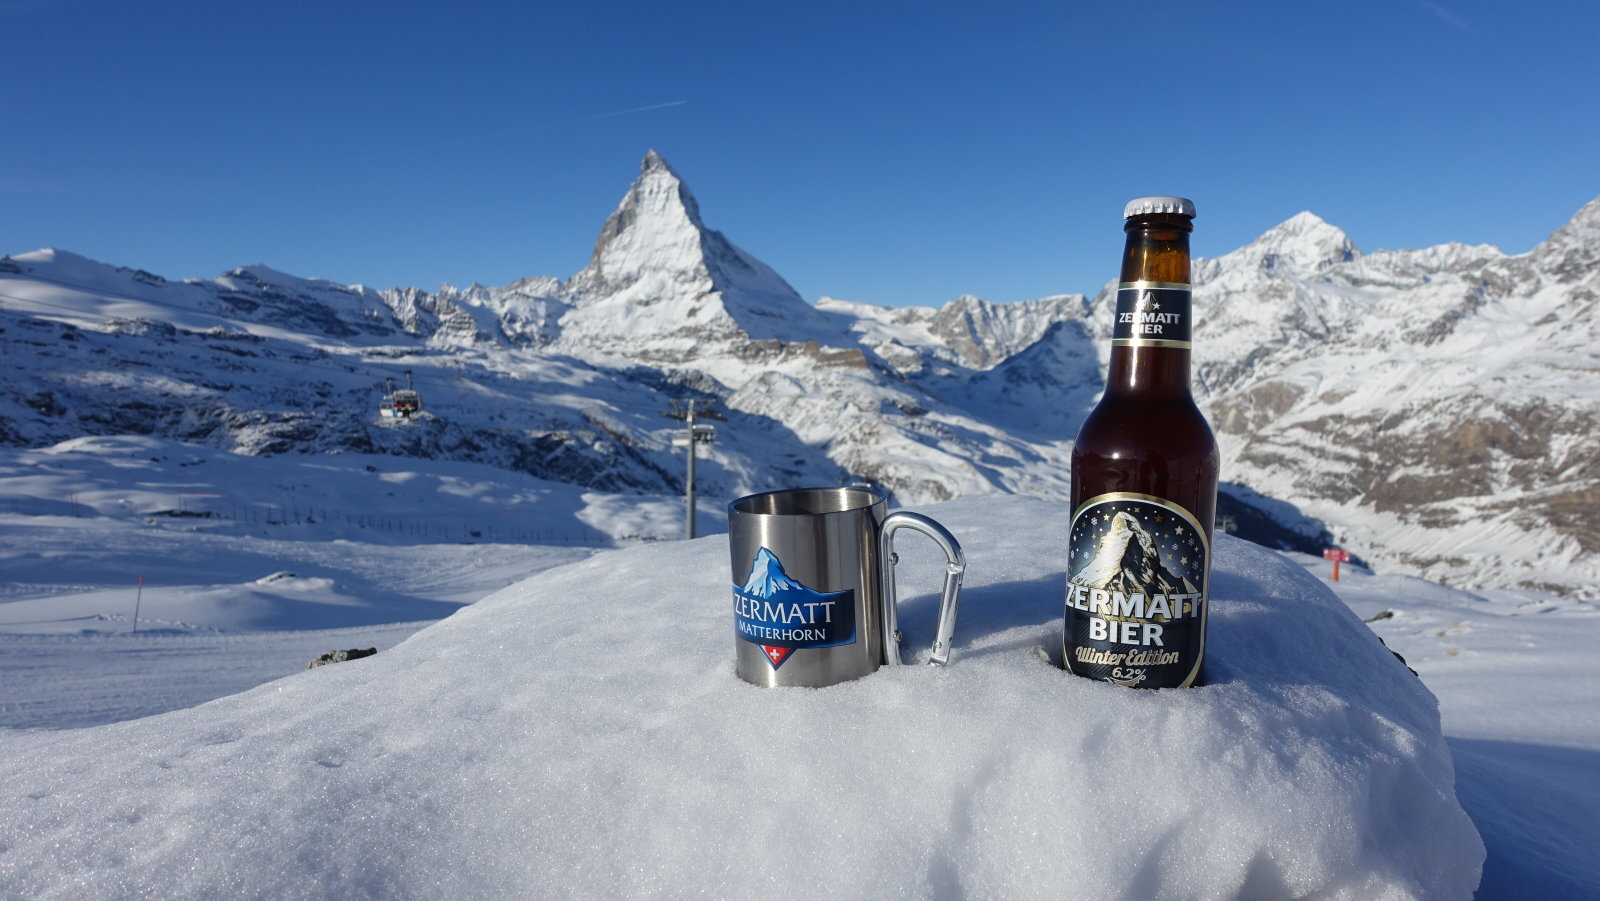 Matterhorn: ezen a képen háromszor is szerepel 😀 | Fotó: Székely Péter